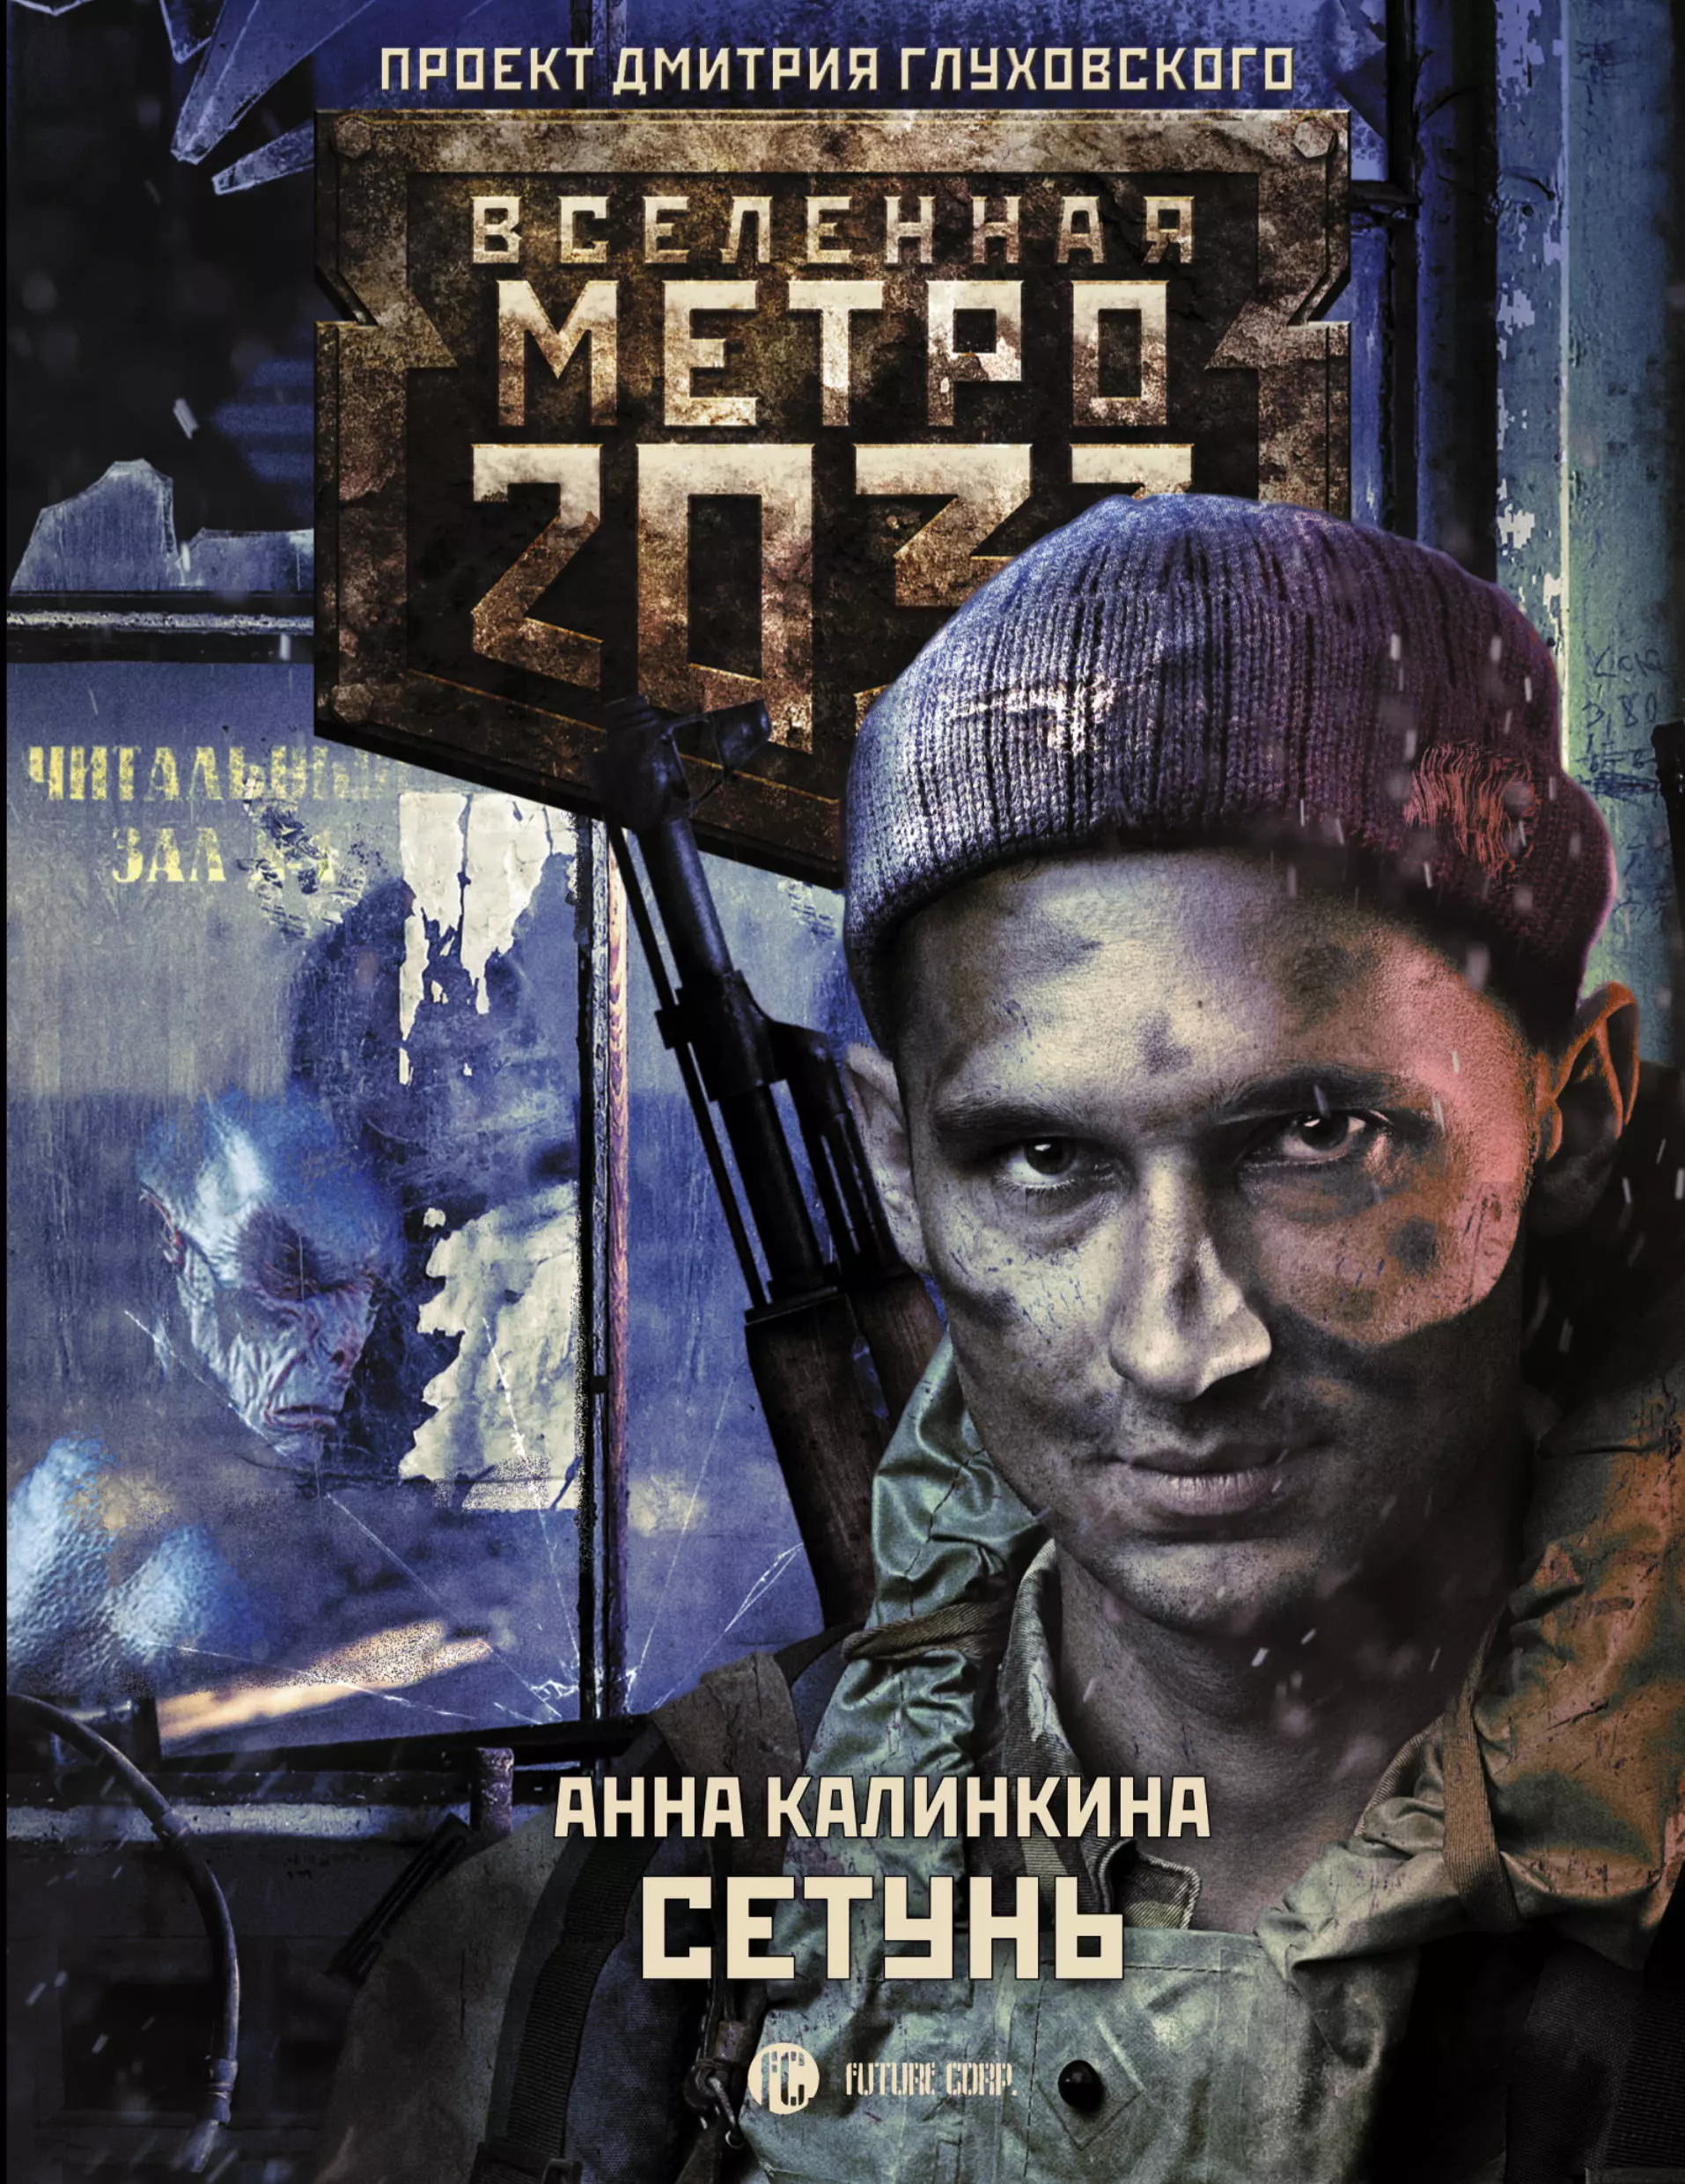 Калинкина Анна Метро 2033: Сетунь метро 2033 калинкина царство крыс на cd диске